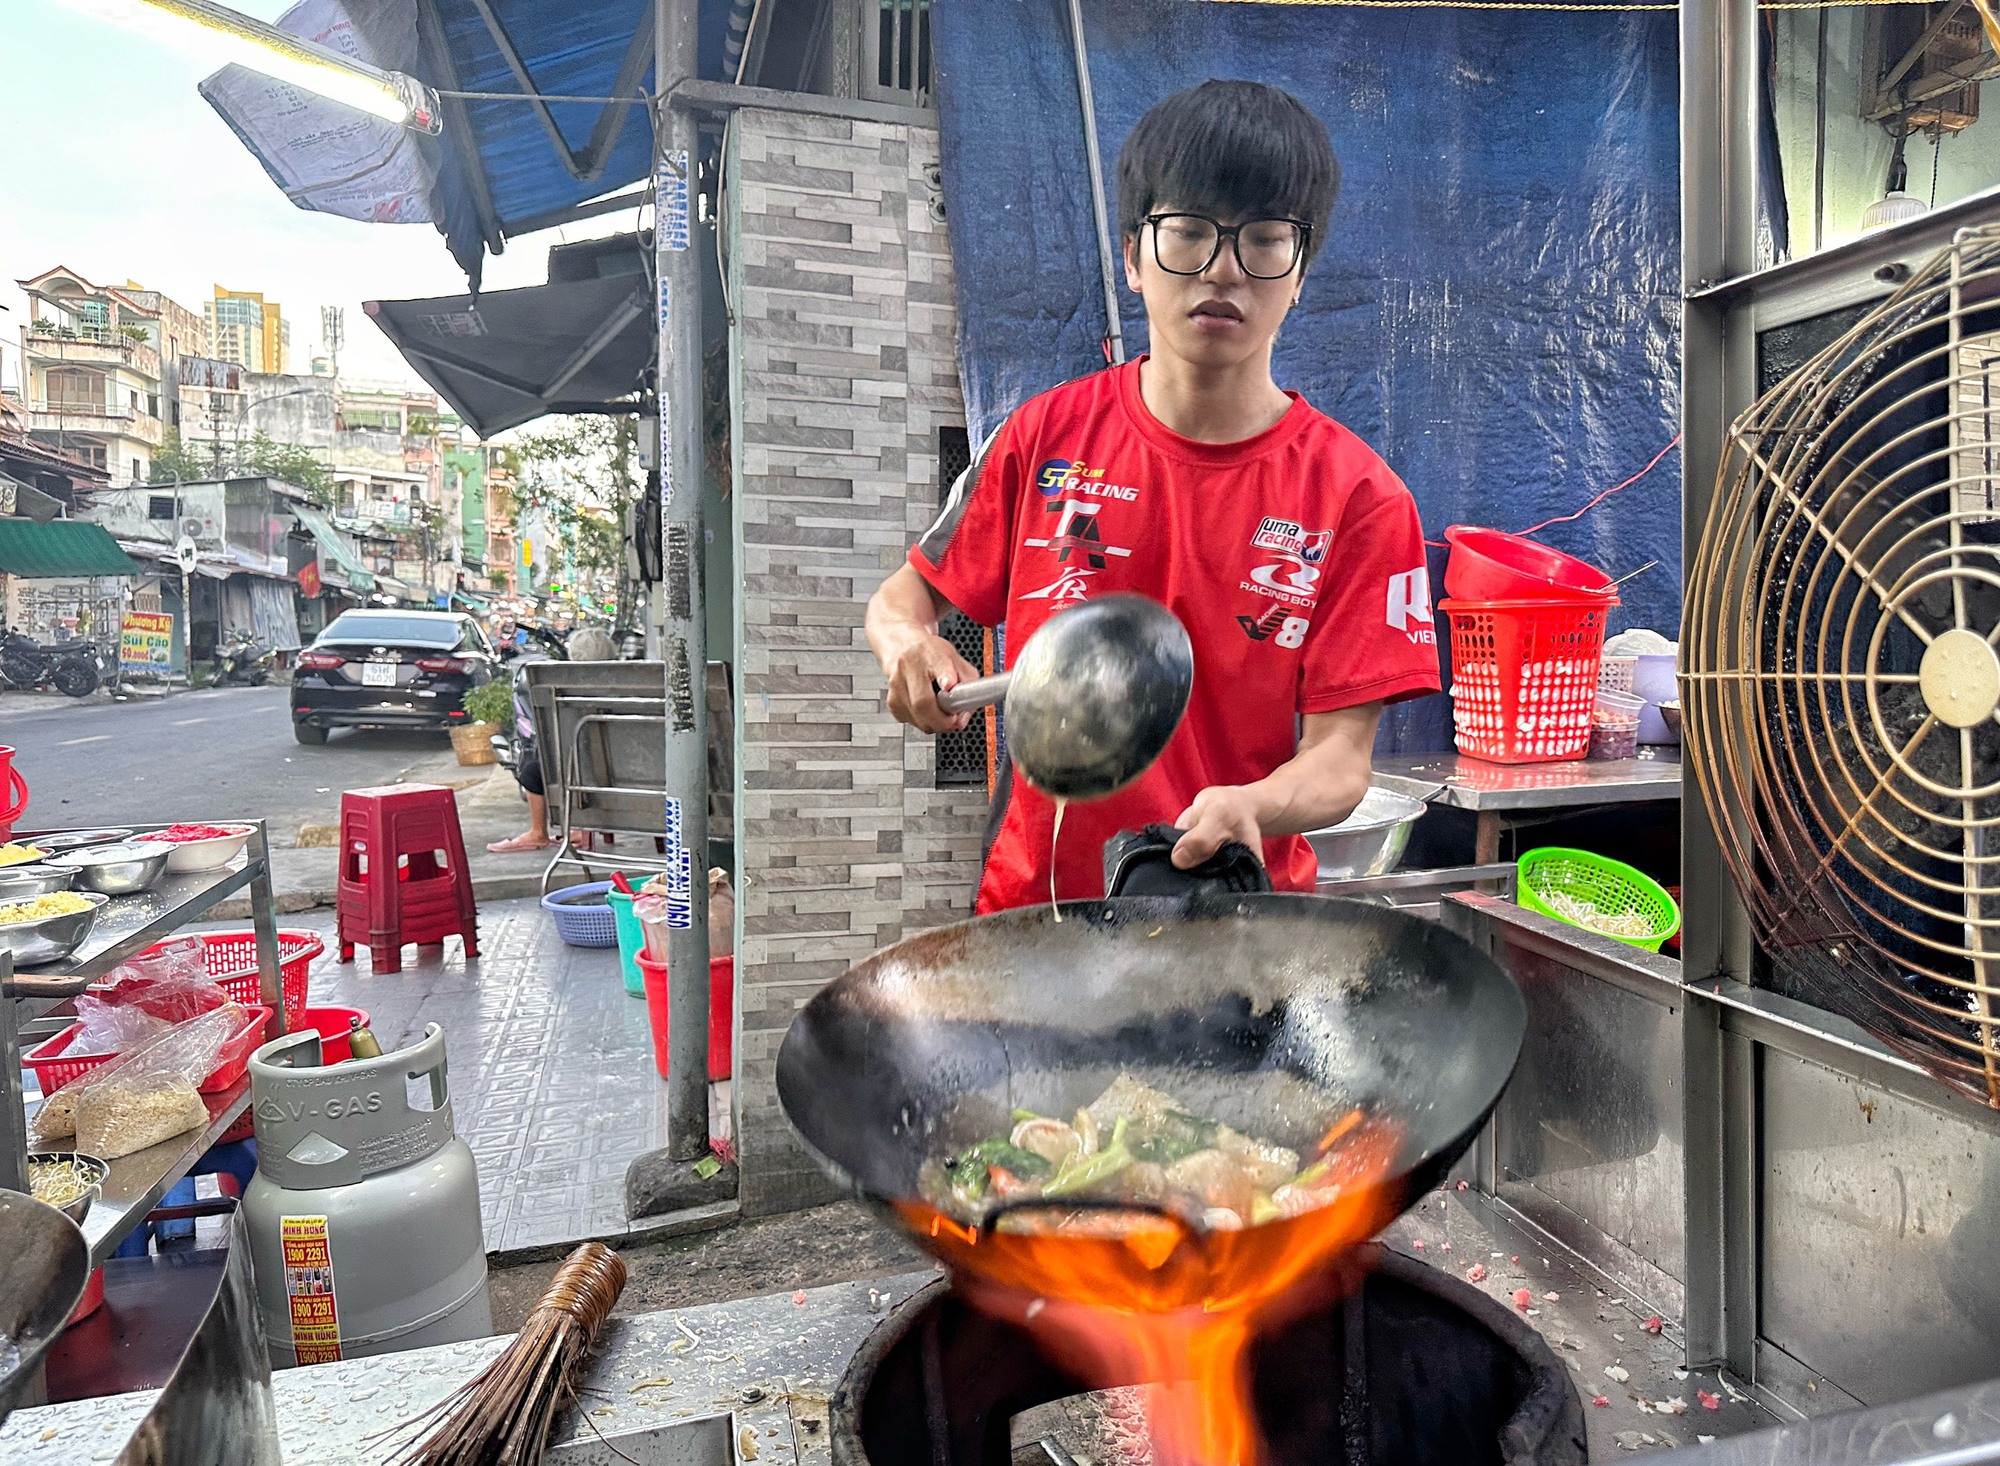 121 món ẩm thực tiêu biểu Việt Nam: Mì xào giòn Sài Gòn có gì hấp dẫn? - Ảnh 1.